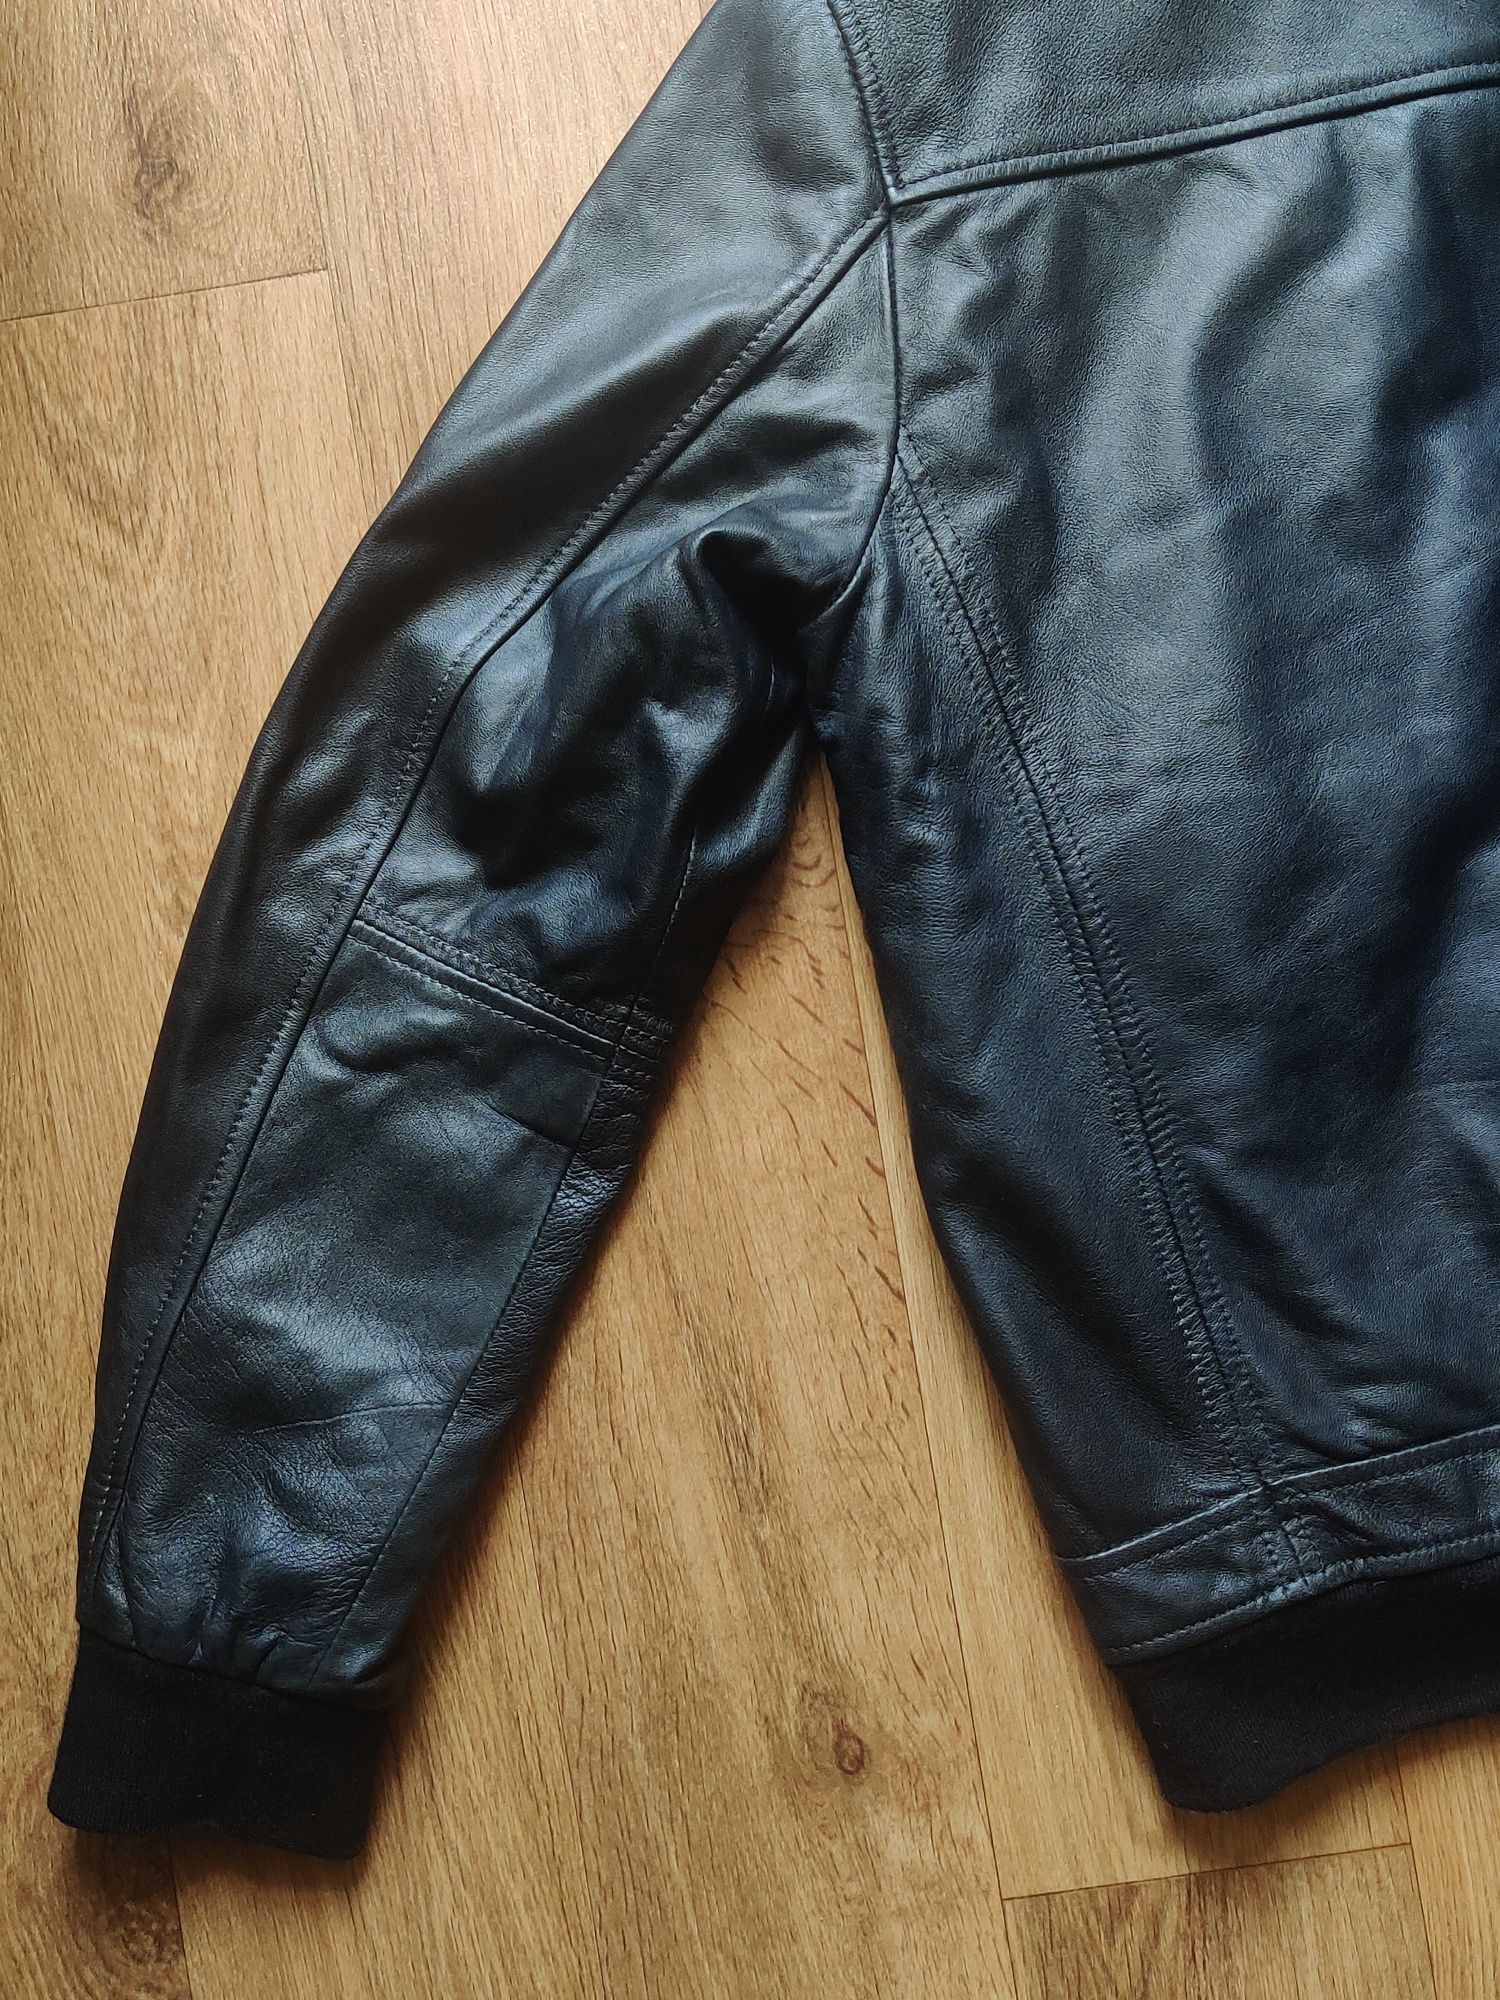 (56), XL, DIRK BIKKEMBERGS, Кожаная куртка, черная, мужская